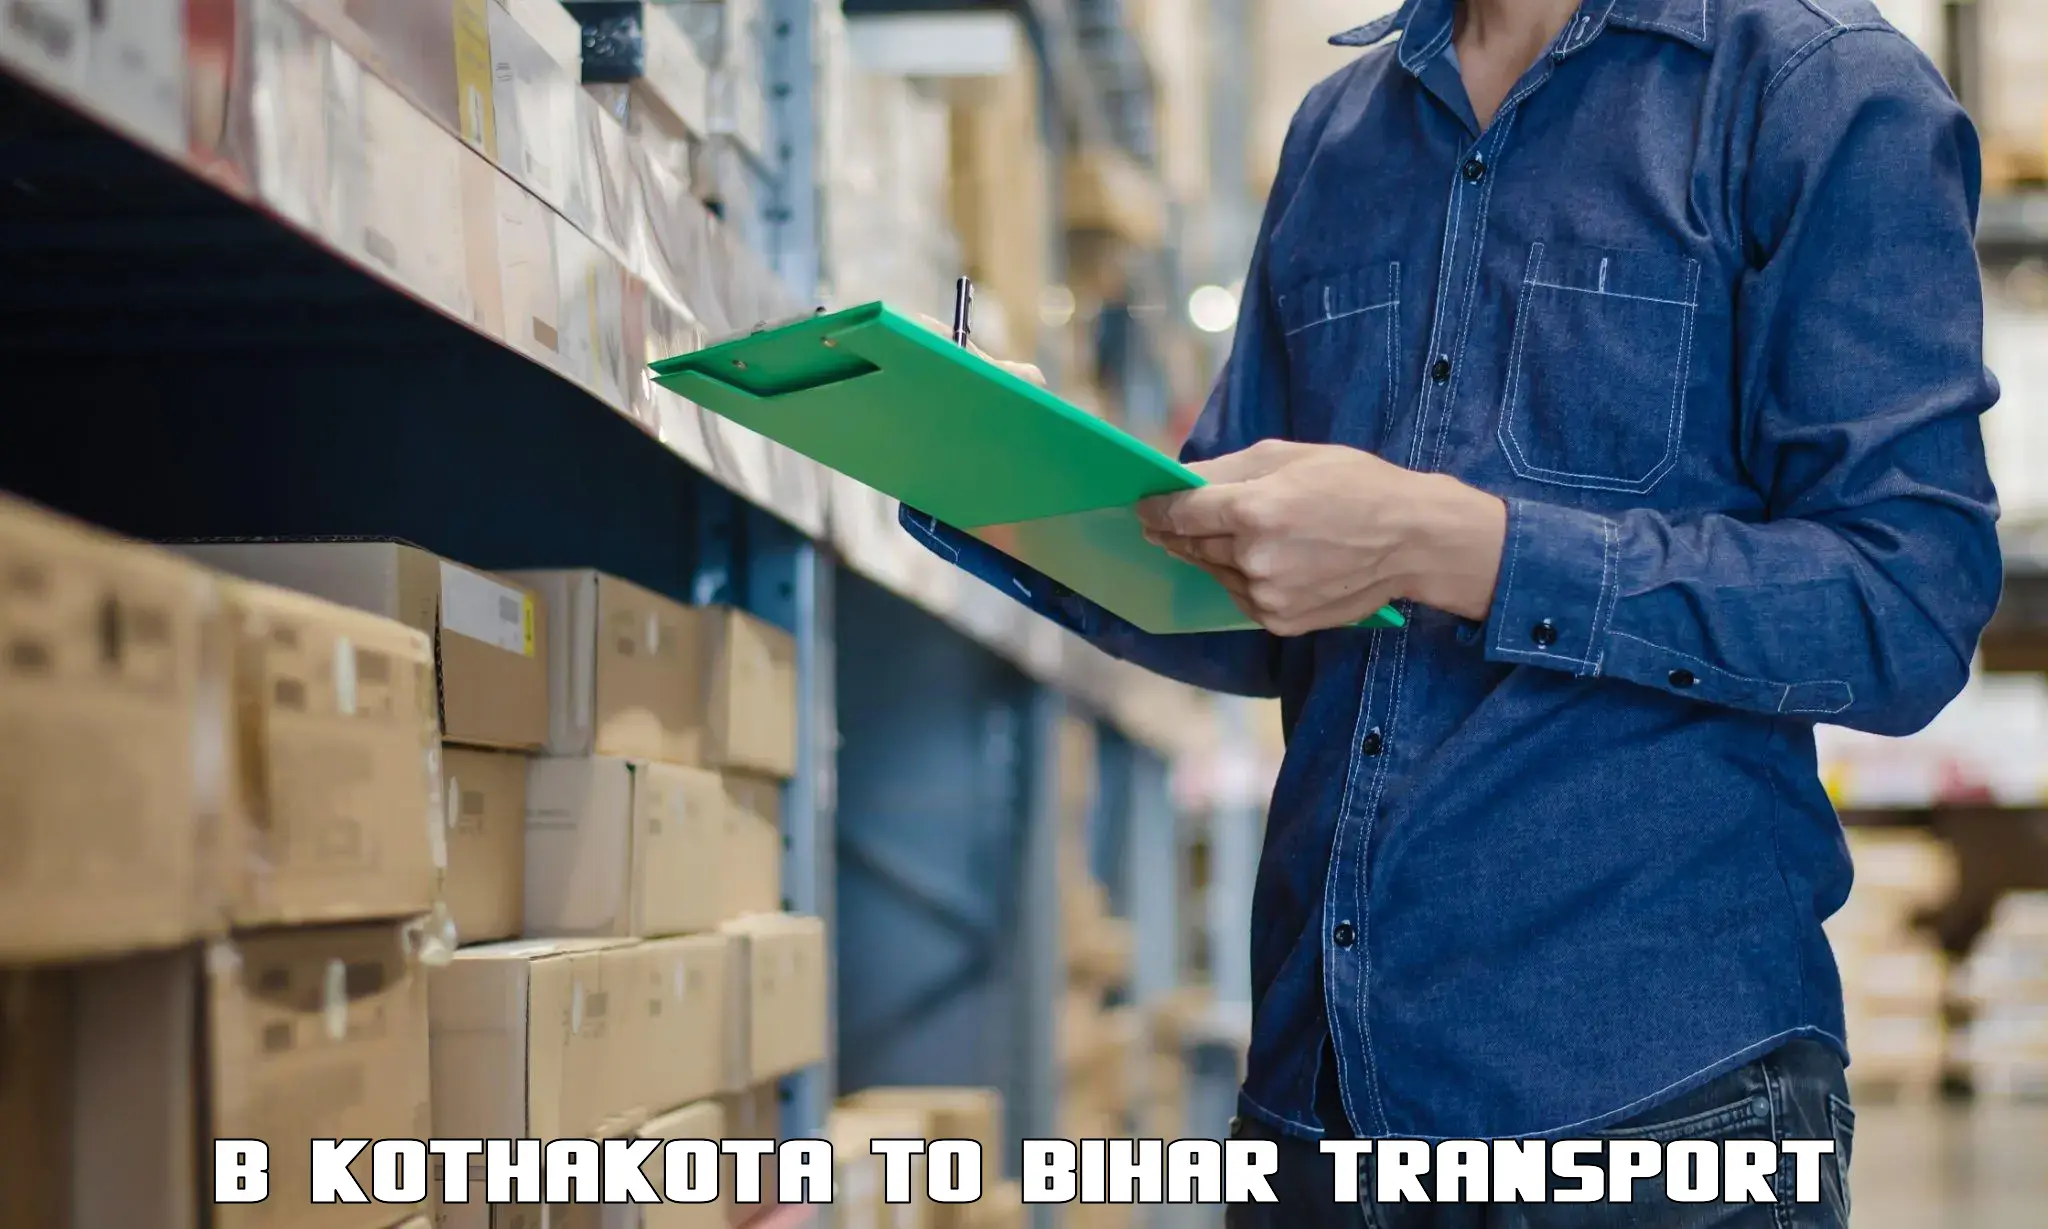 Part load transport service in India B Kothakota to Lakhisarai